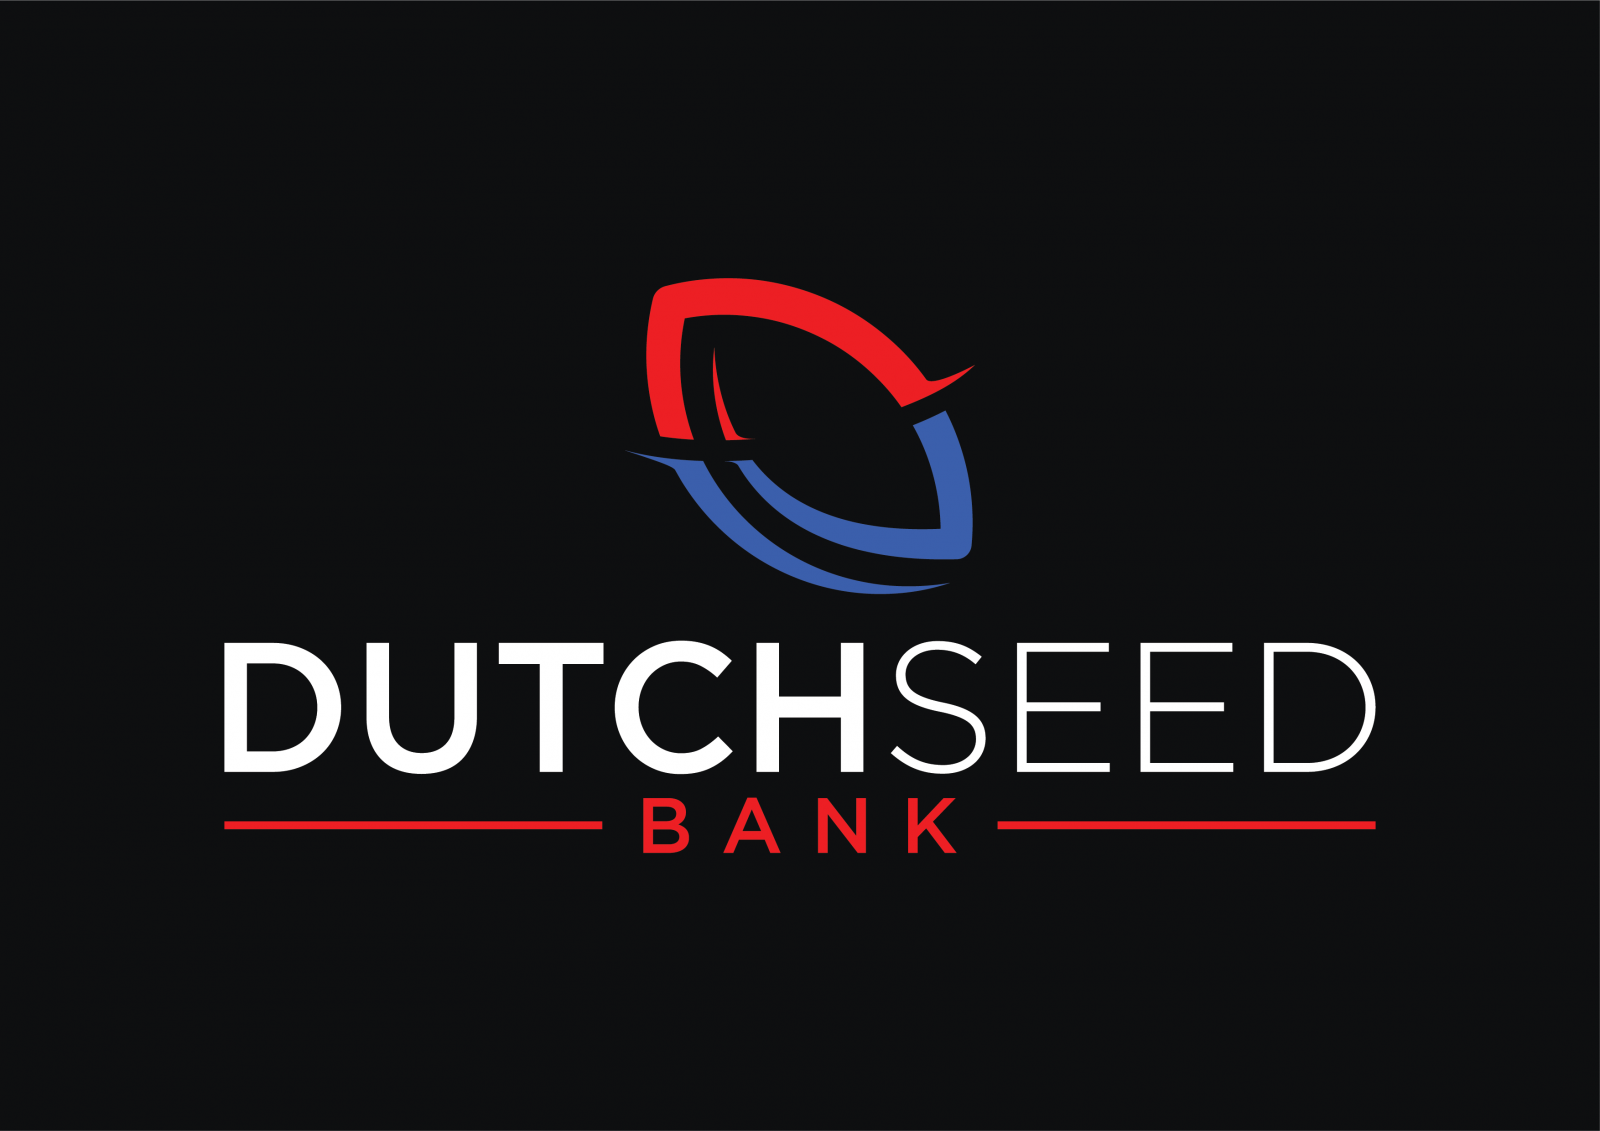 dutchseedbank.net